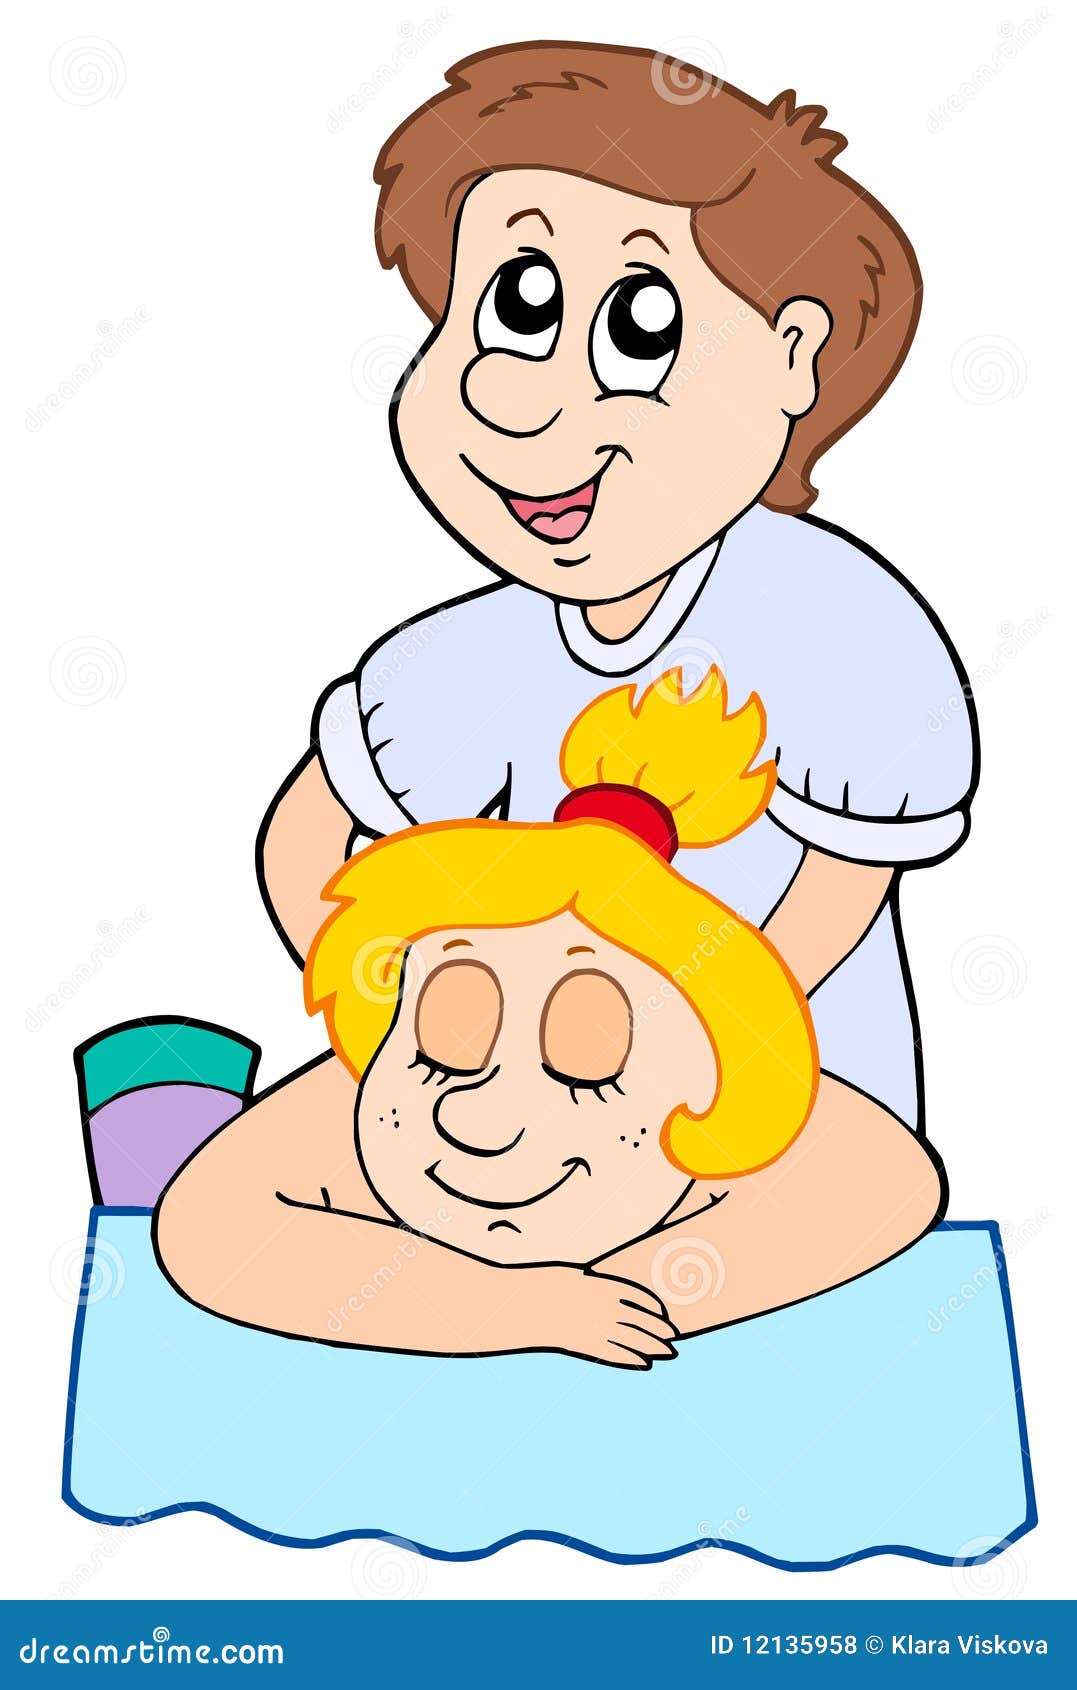 Massage cartoon funny